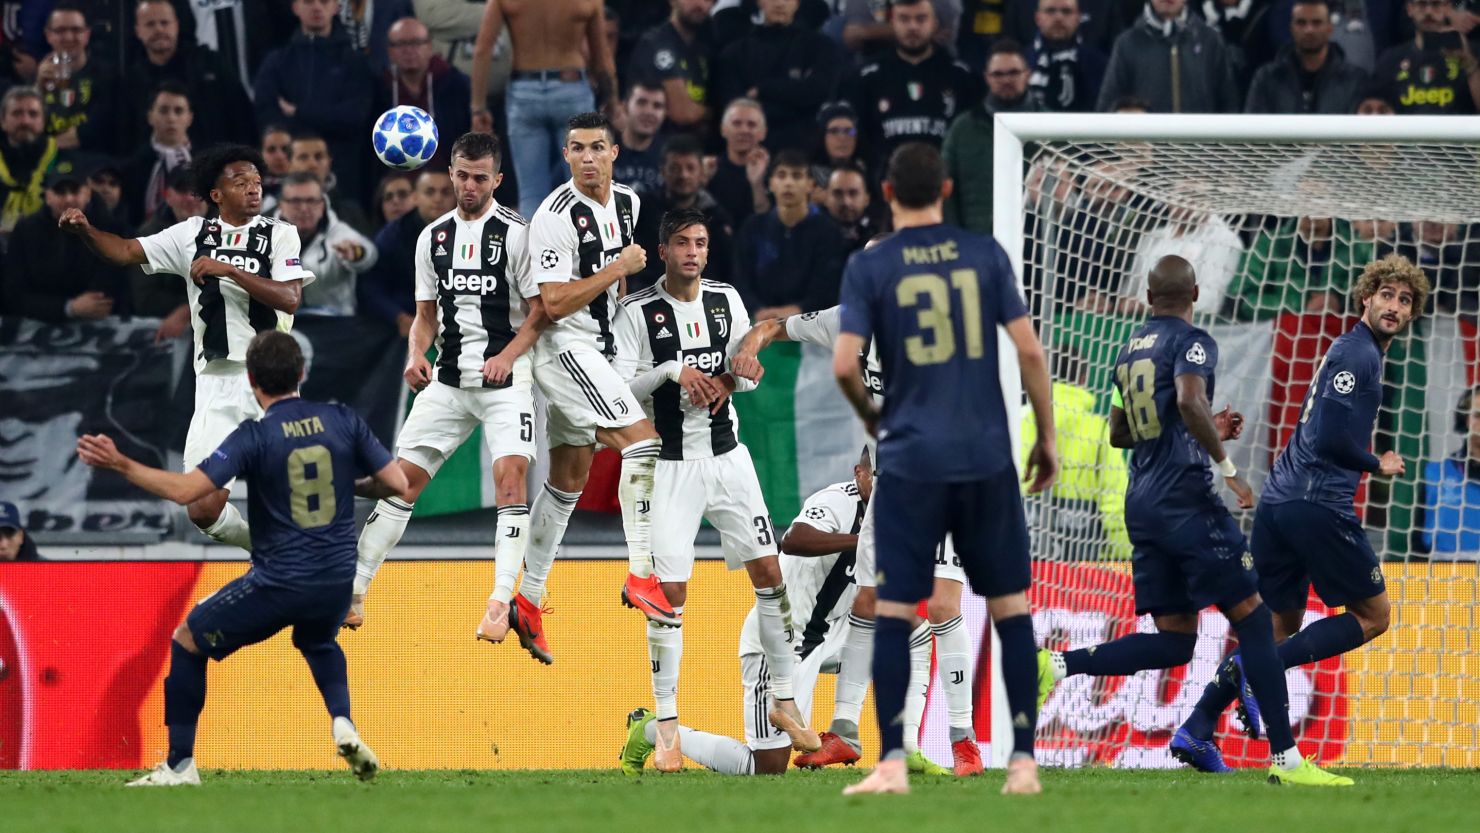 Juan Mata scores for Manchester United against Juventus.